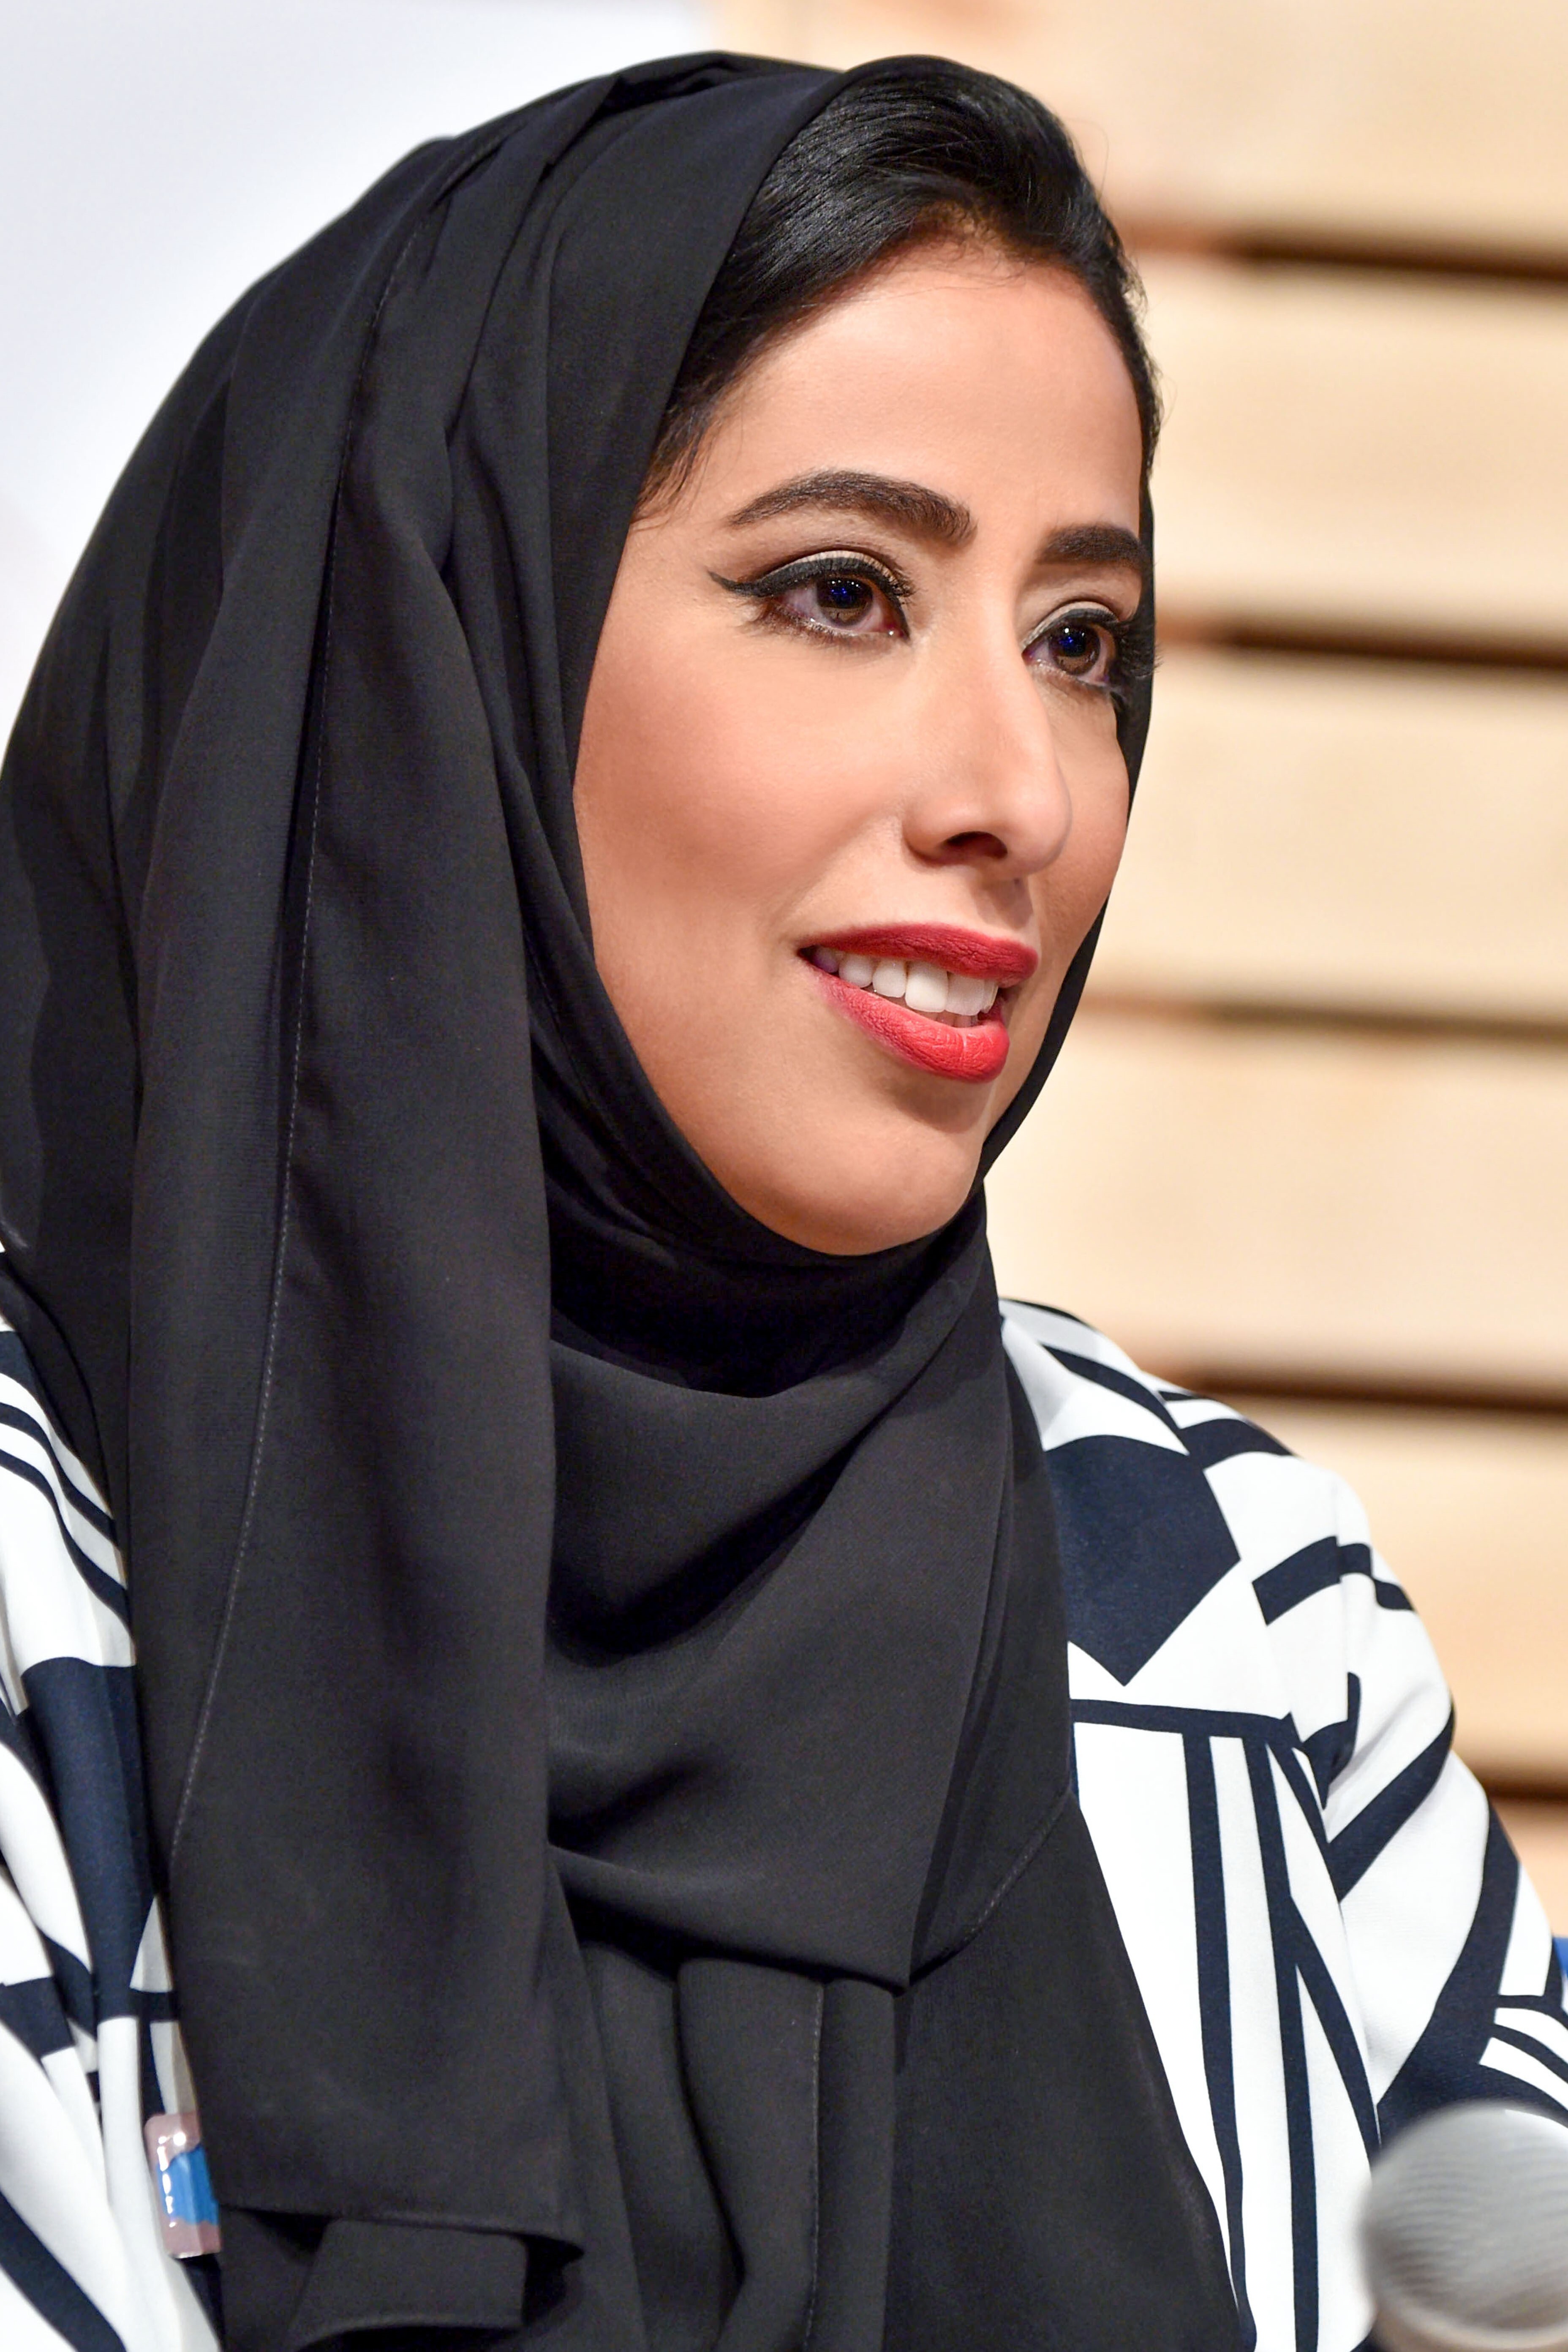 مؤسسة دبي للمرأة تطلق برنامج "المرأة في مجالس الإدارة العالمية" بالتعاون مع معهد المديرين في لندن